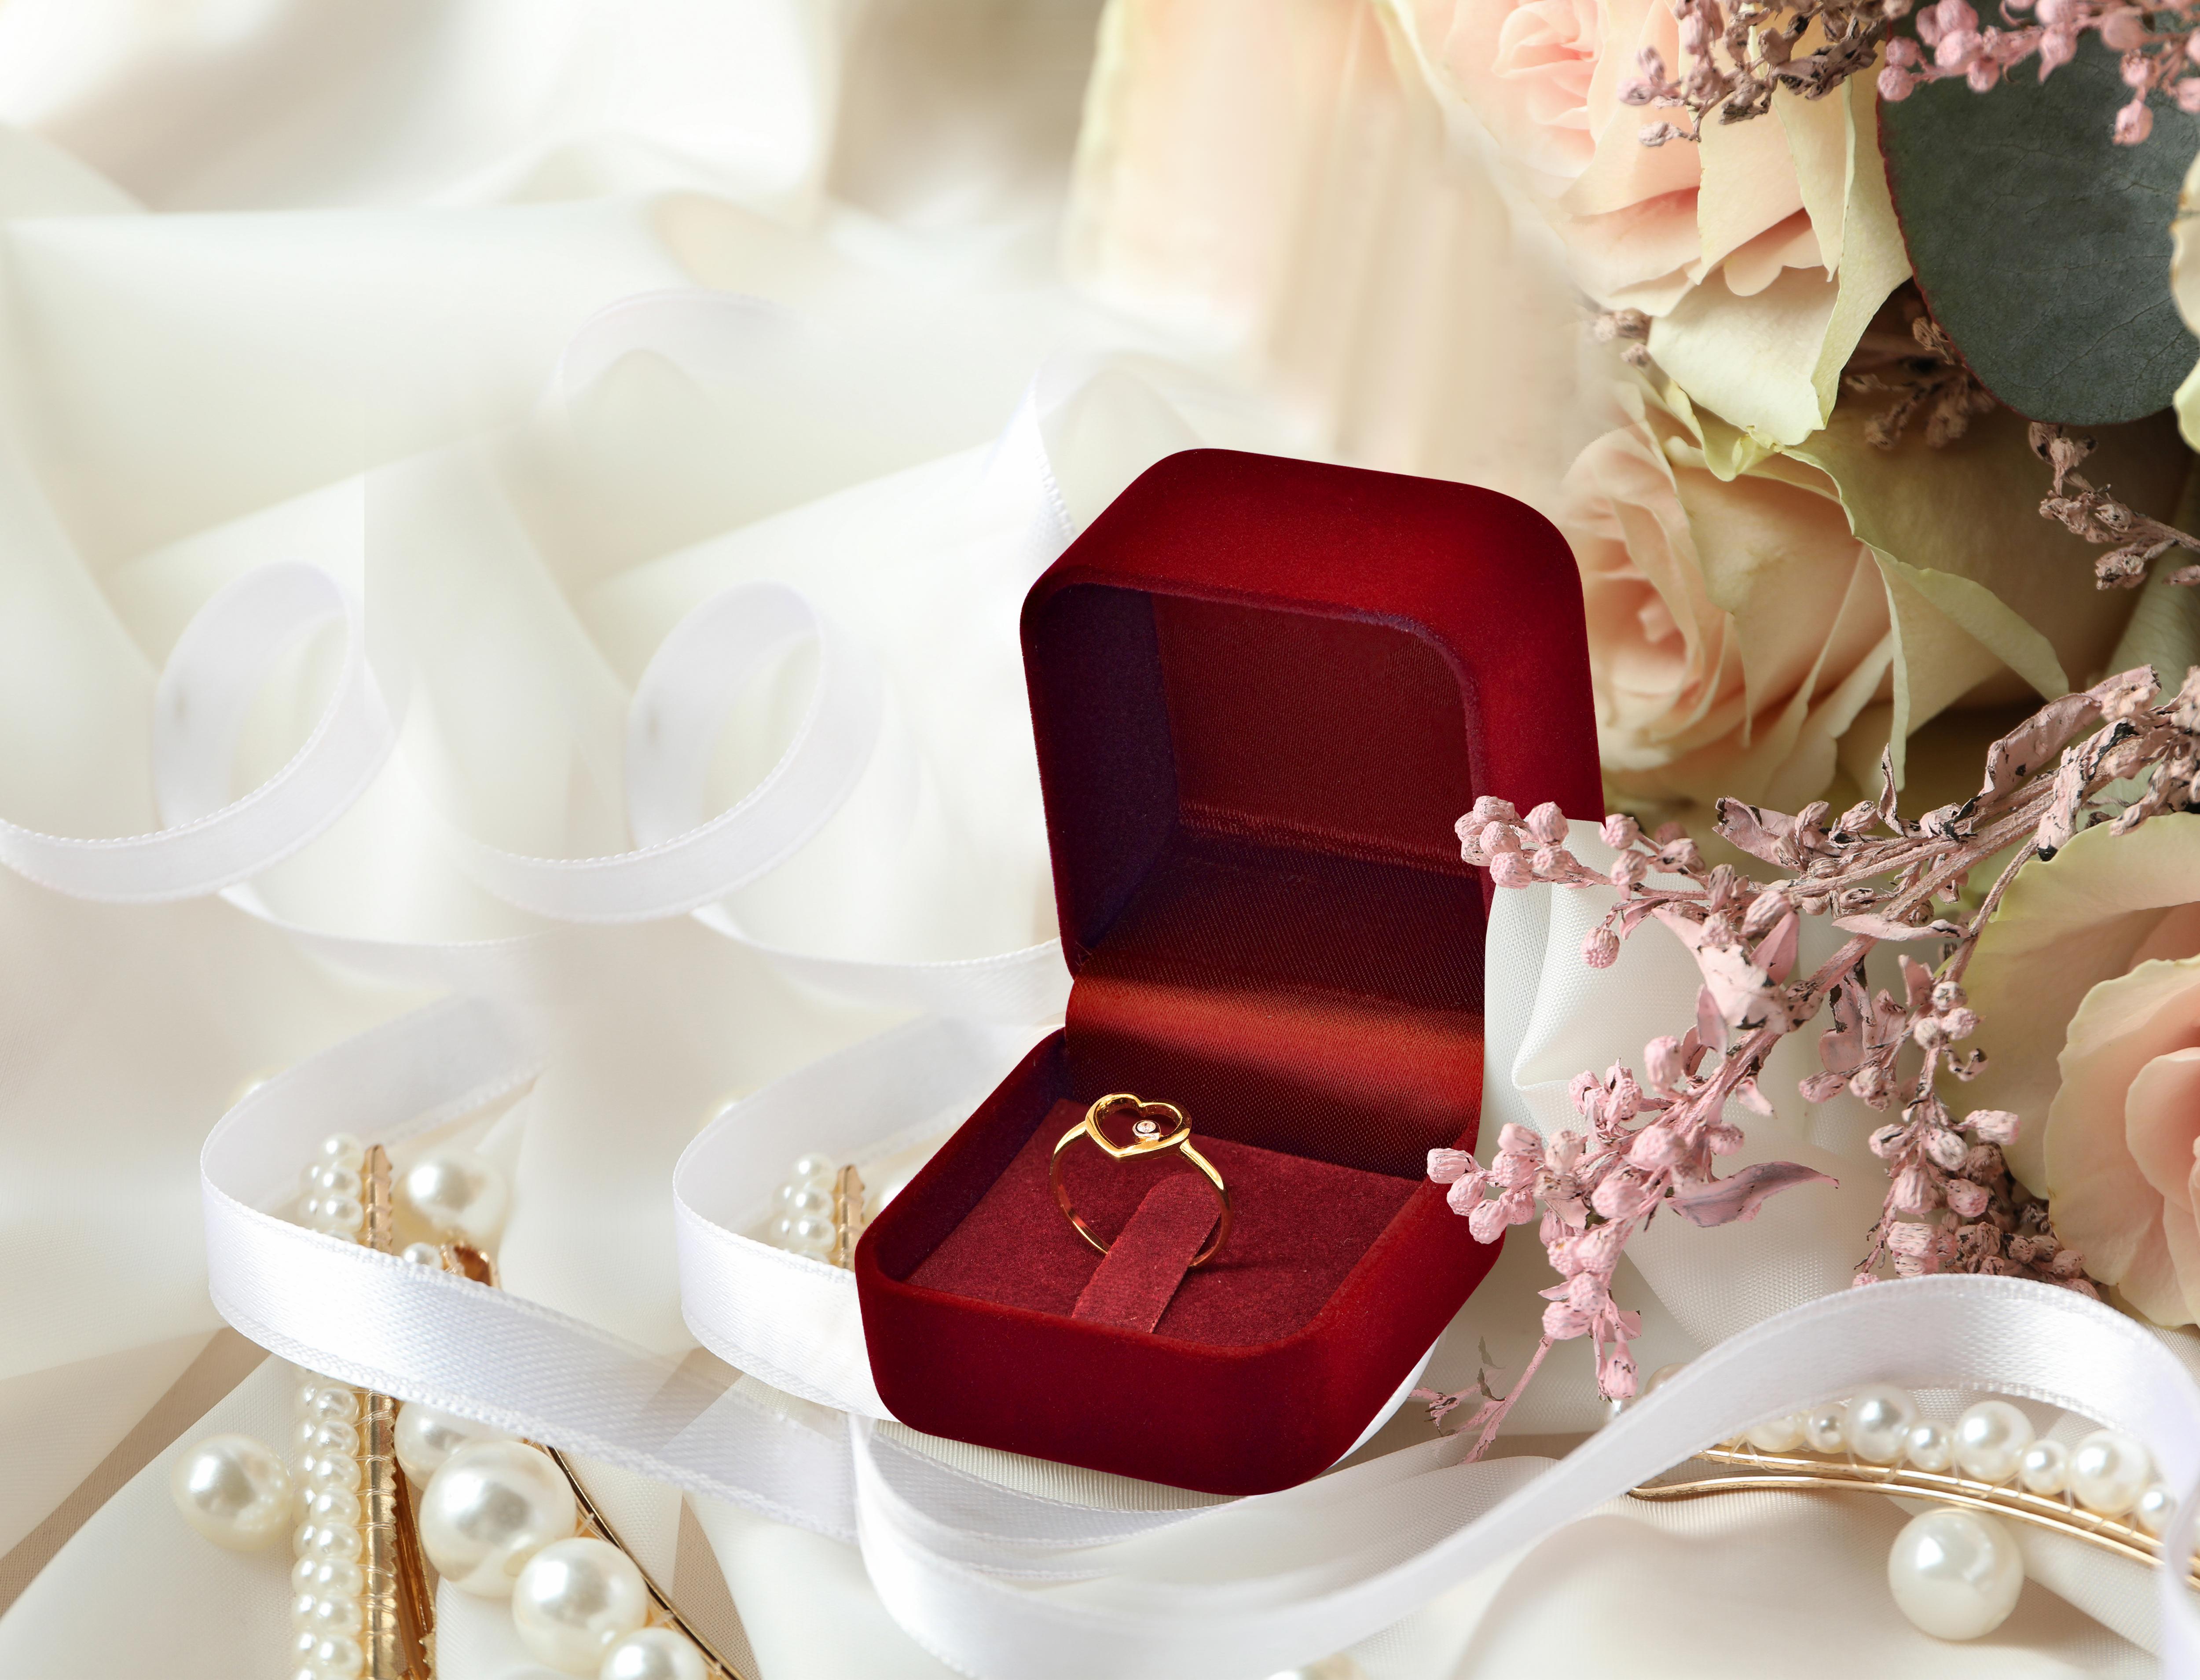 For Sale:  14k Rose Gold Diamond Heart Ring Minimal Heart Ring with Bezel Set Diamond 17